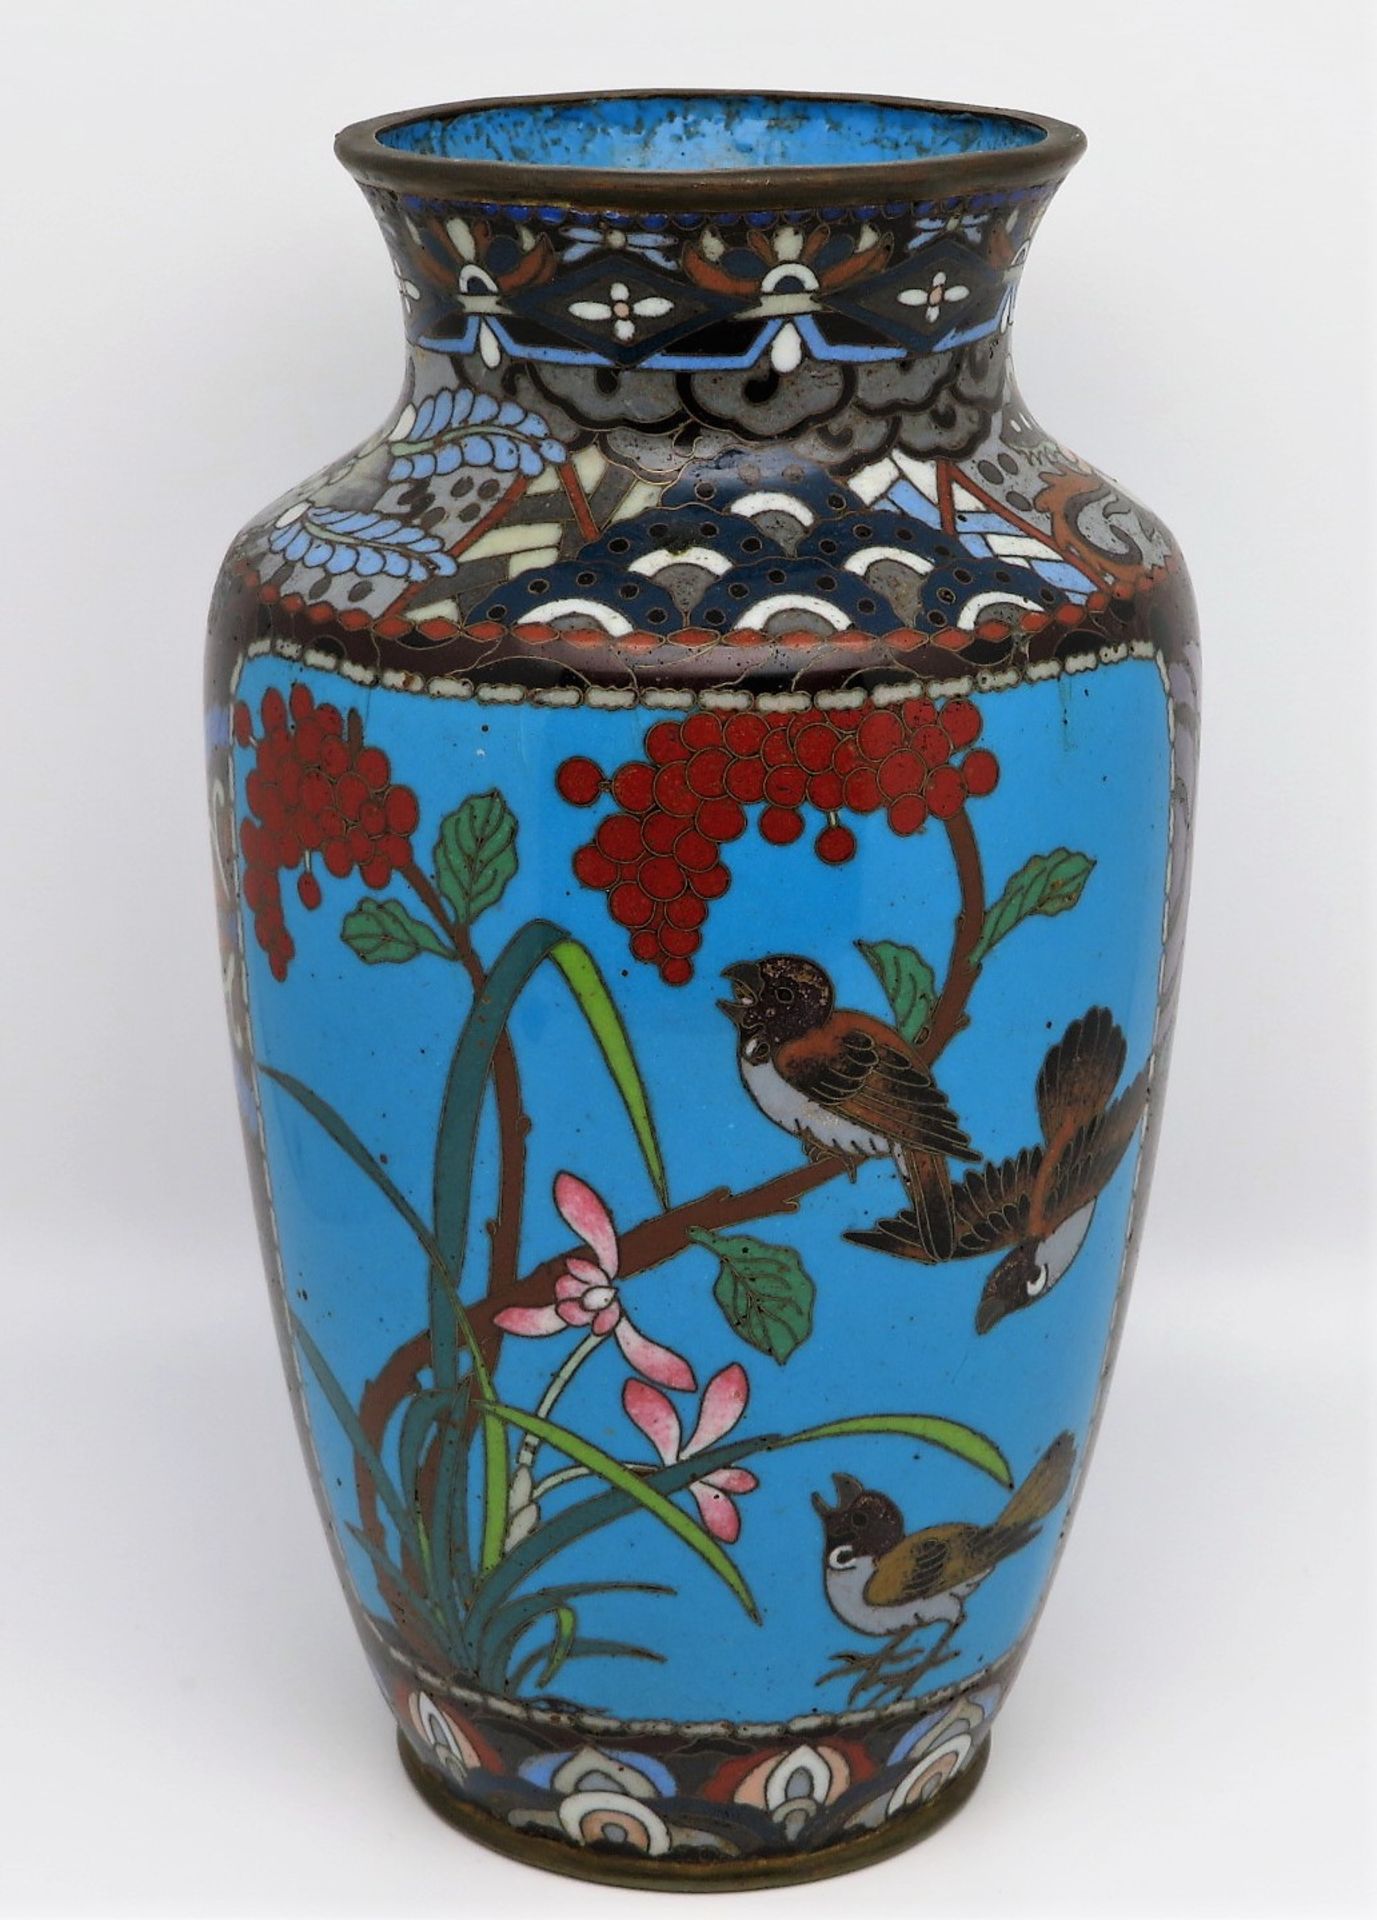 Cloisonné Vase, Japan, Meiji Periode, 1868 - 1912, farbiger Zellenschmelz mit Dekor von Vögeln, ein